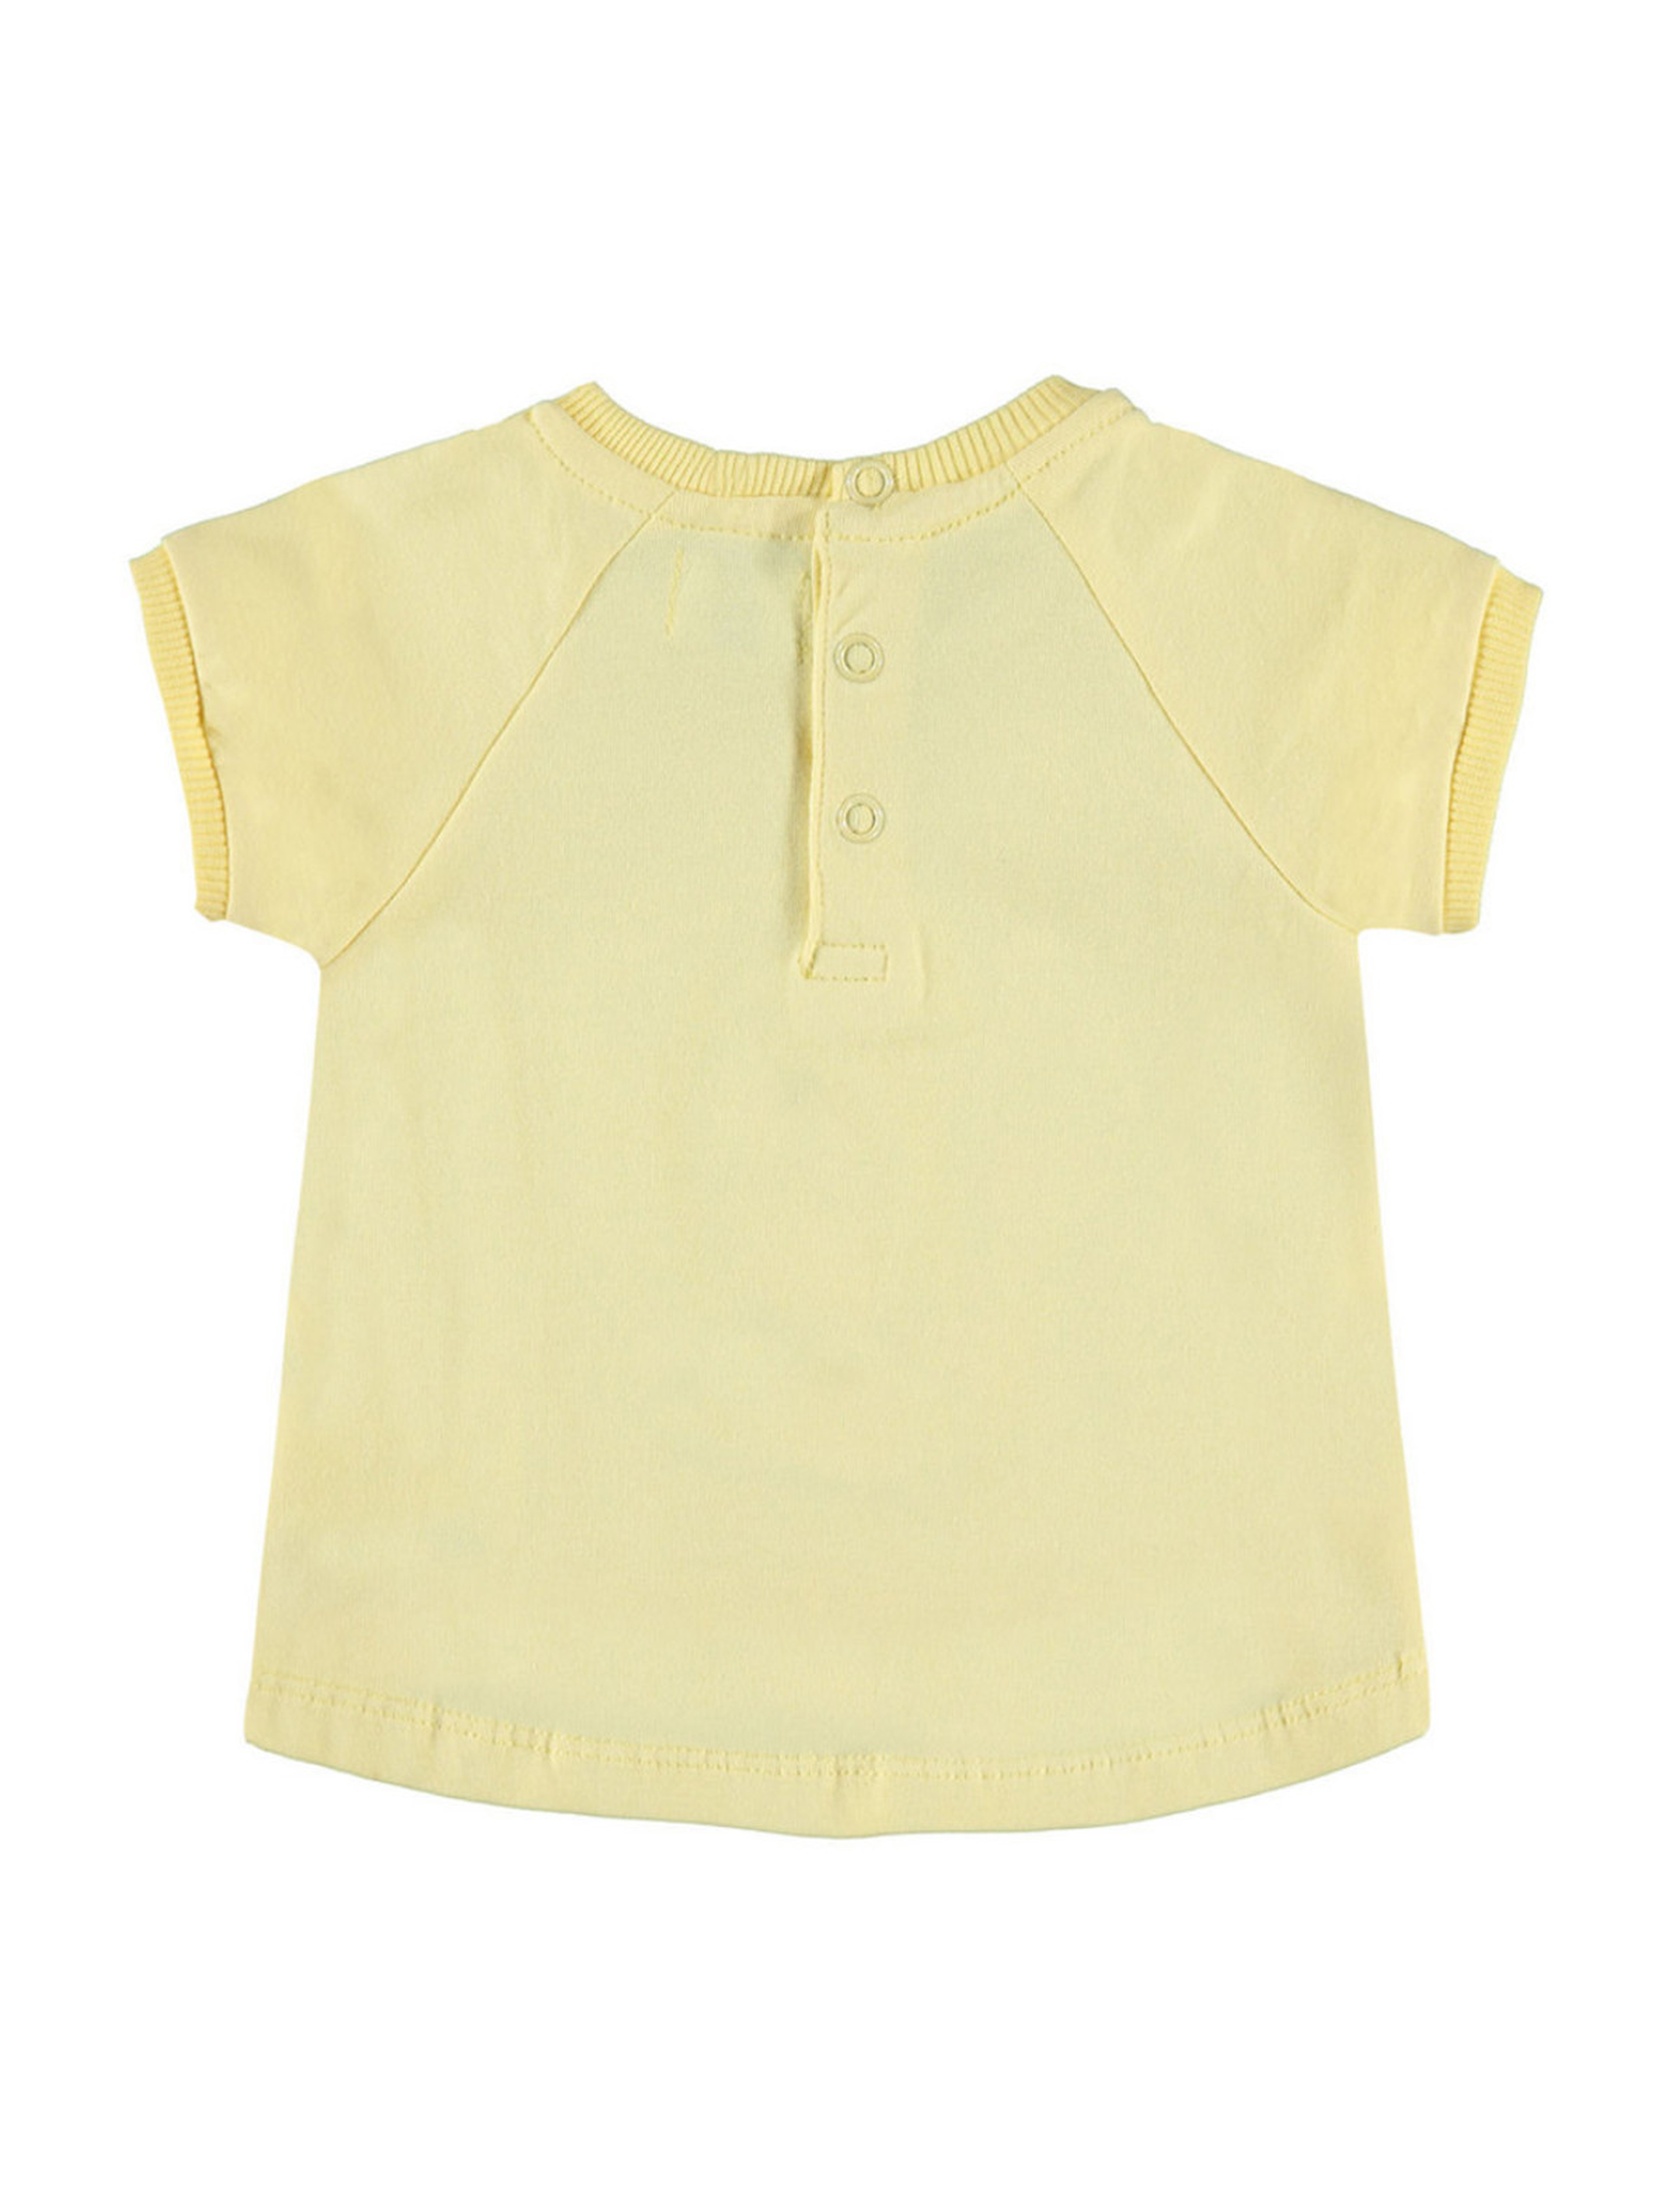 Dziewczęca bluzka z krótkim rękawem żółta